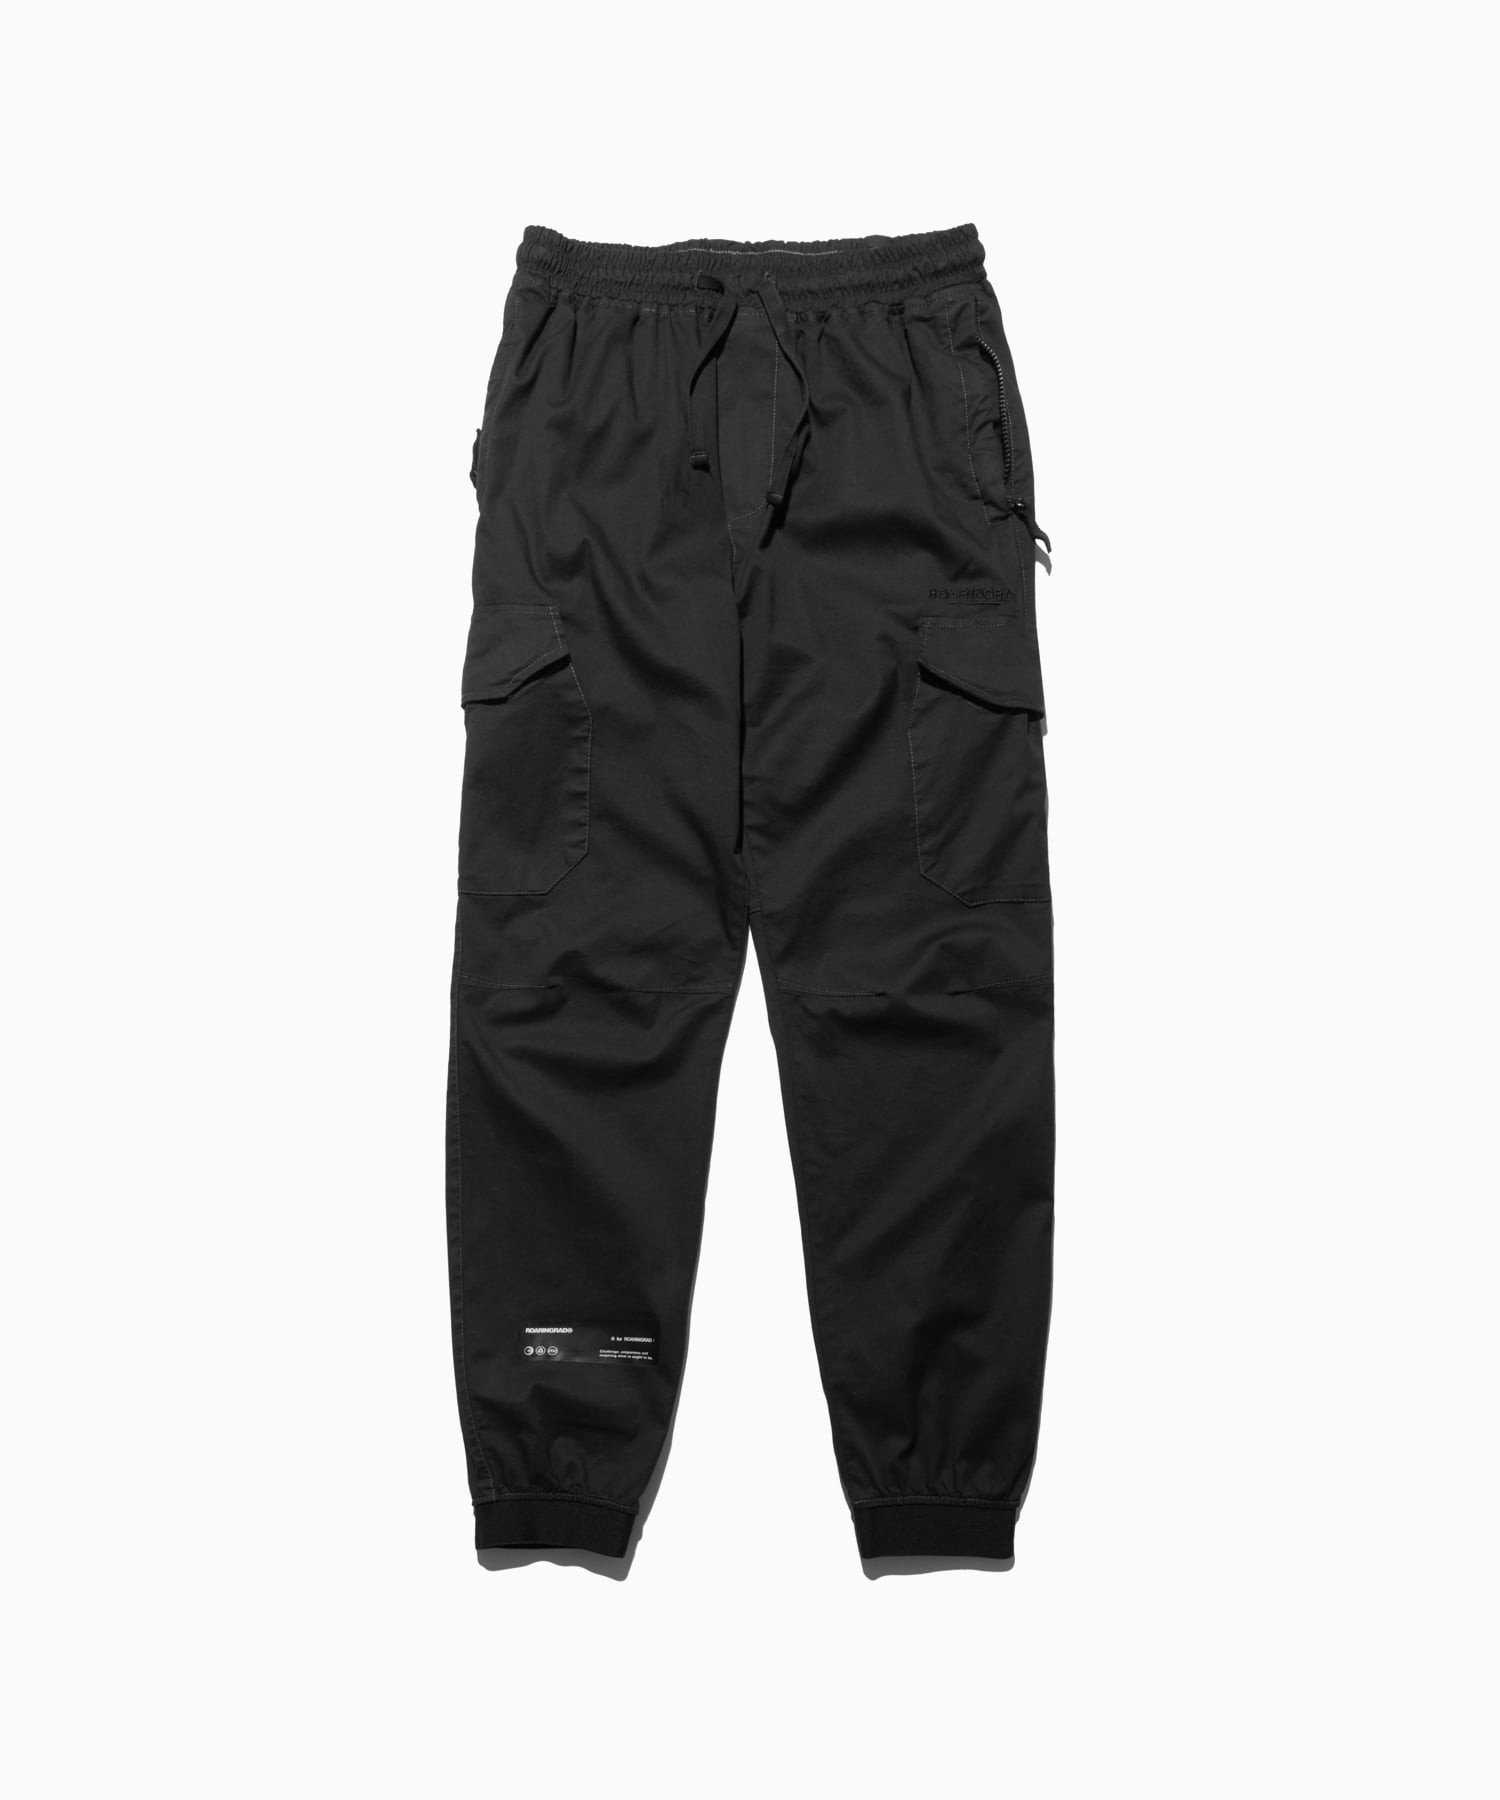 pigment cago jogger pants black - 로어링라드(ROARINGRAD)